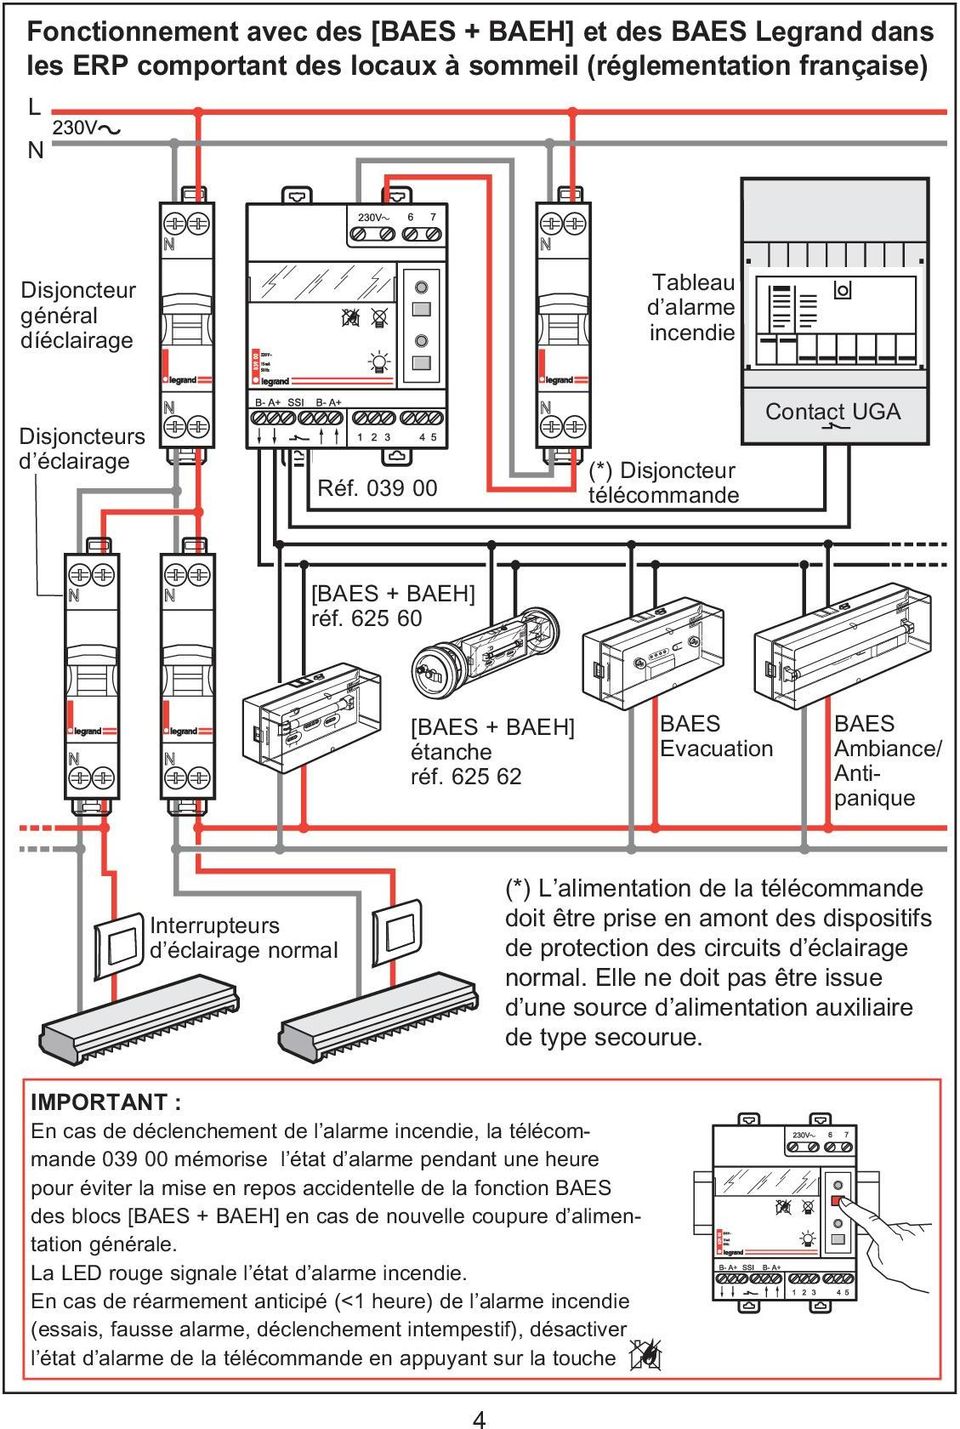 625 62 BAES Evacuation BAES Ambiance/ Antipanique Interrupteurs d éclairage normal (*) L alimentation de la télécommande doit être prise en amont des dispositifs de protection des circuits d